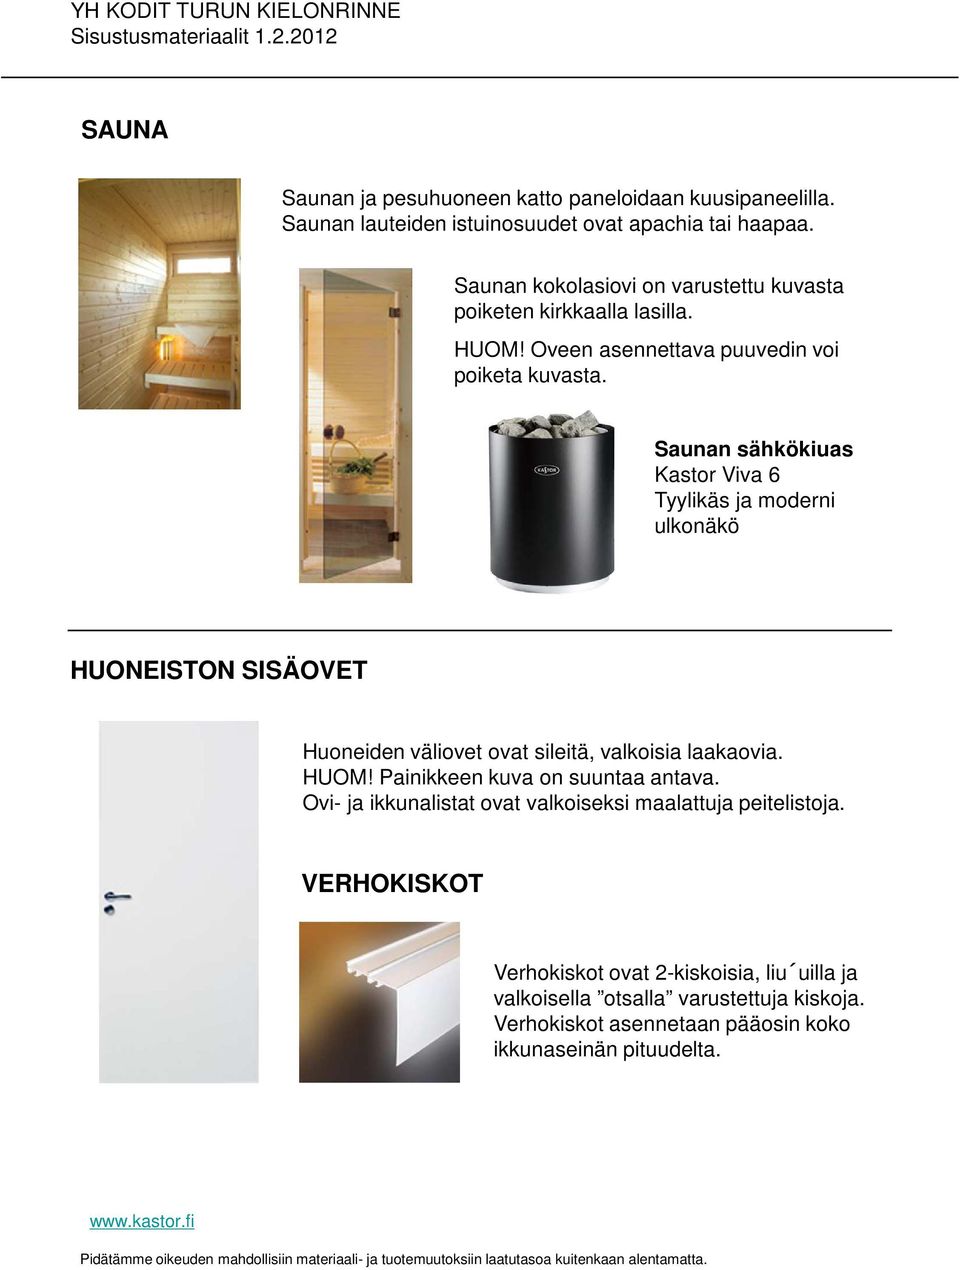 Saunan sähkökiuas Kastor Viva 6 Tyylikäs ja moderni ulkonäkö HUONEISTON SISÄOVET Huoneiden väliovet ovat sileitä, valkoisia laakaovia. HUOM!